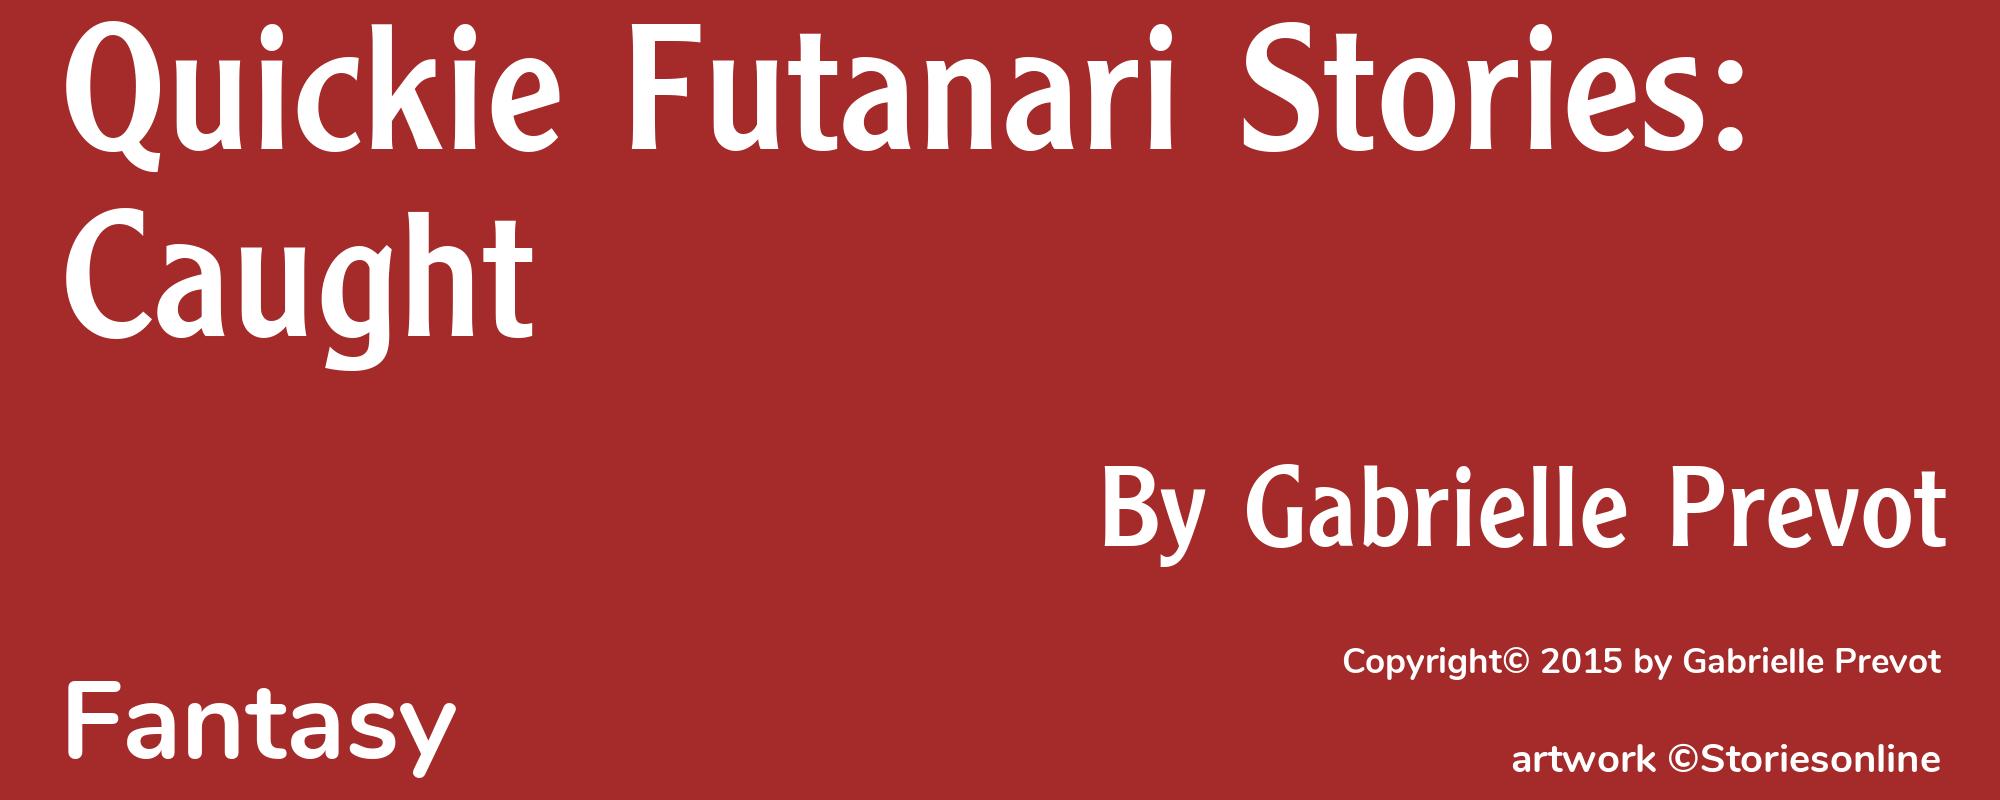 Quickie Futanari Stories: Caught - Cover